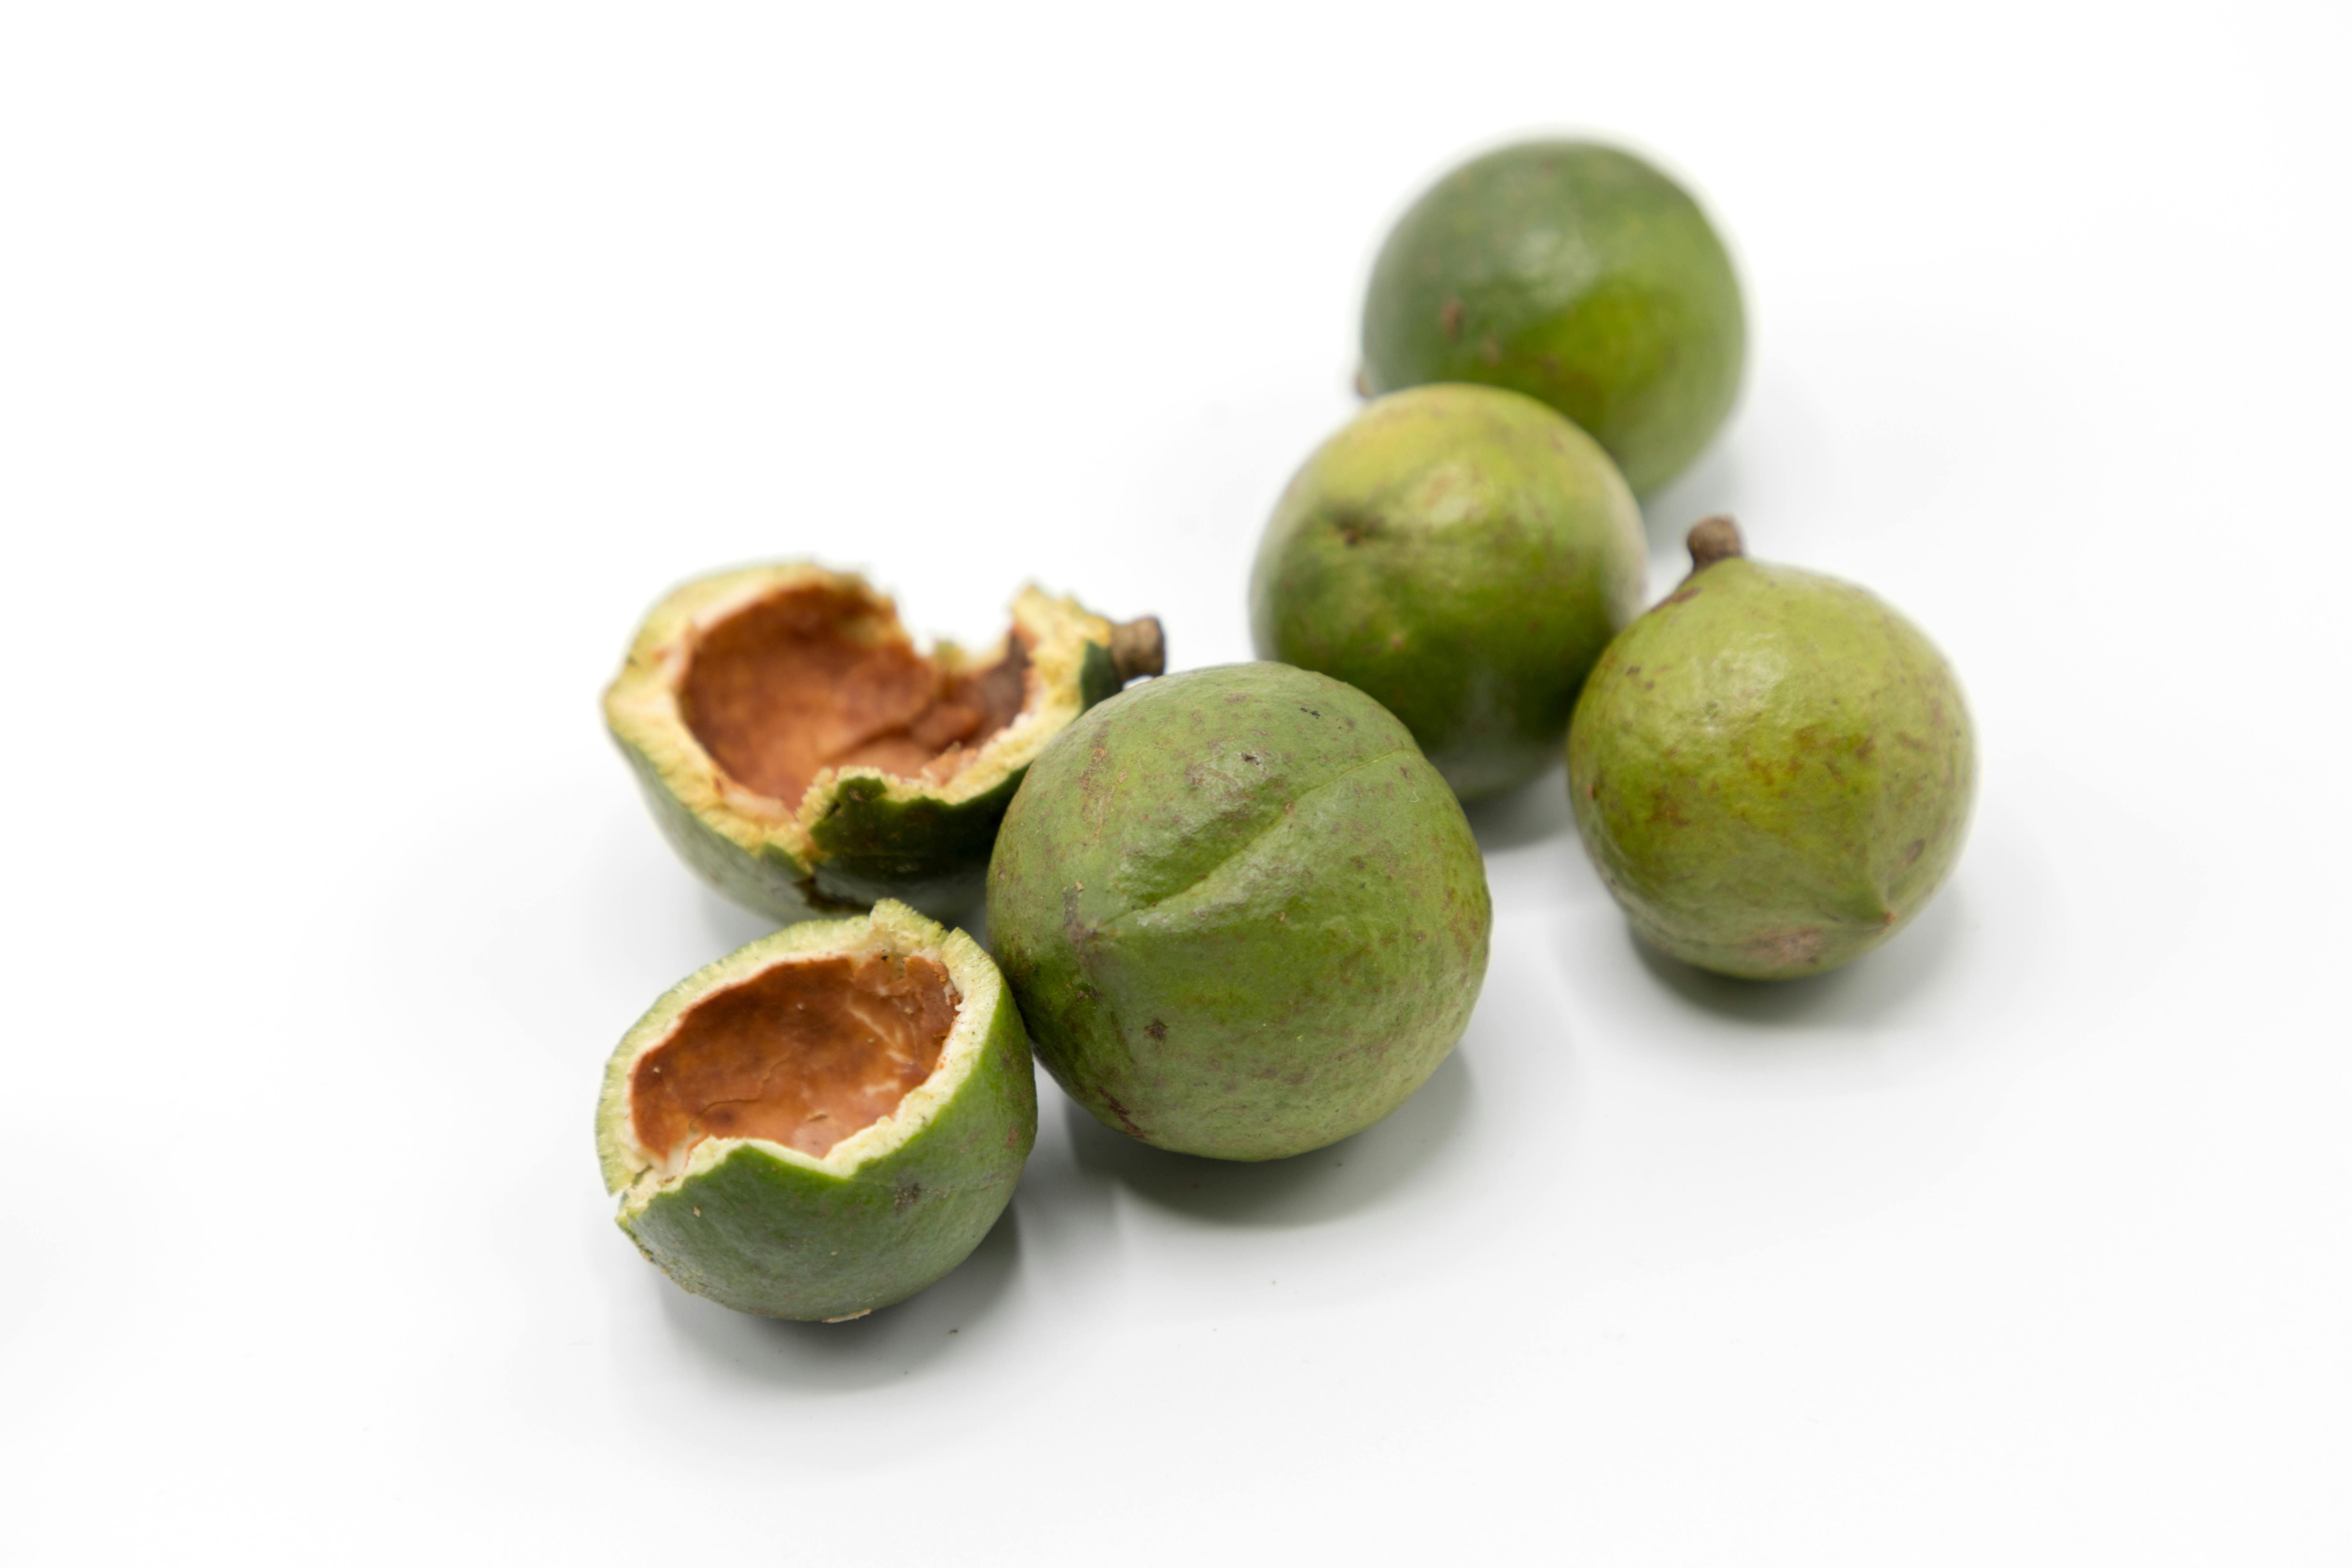 Fotografía de unas nueces de macadamia frescas, una de ellas abierta y las otras cinco cerradas.